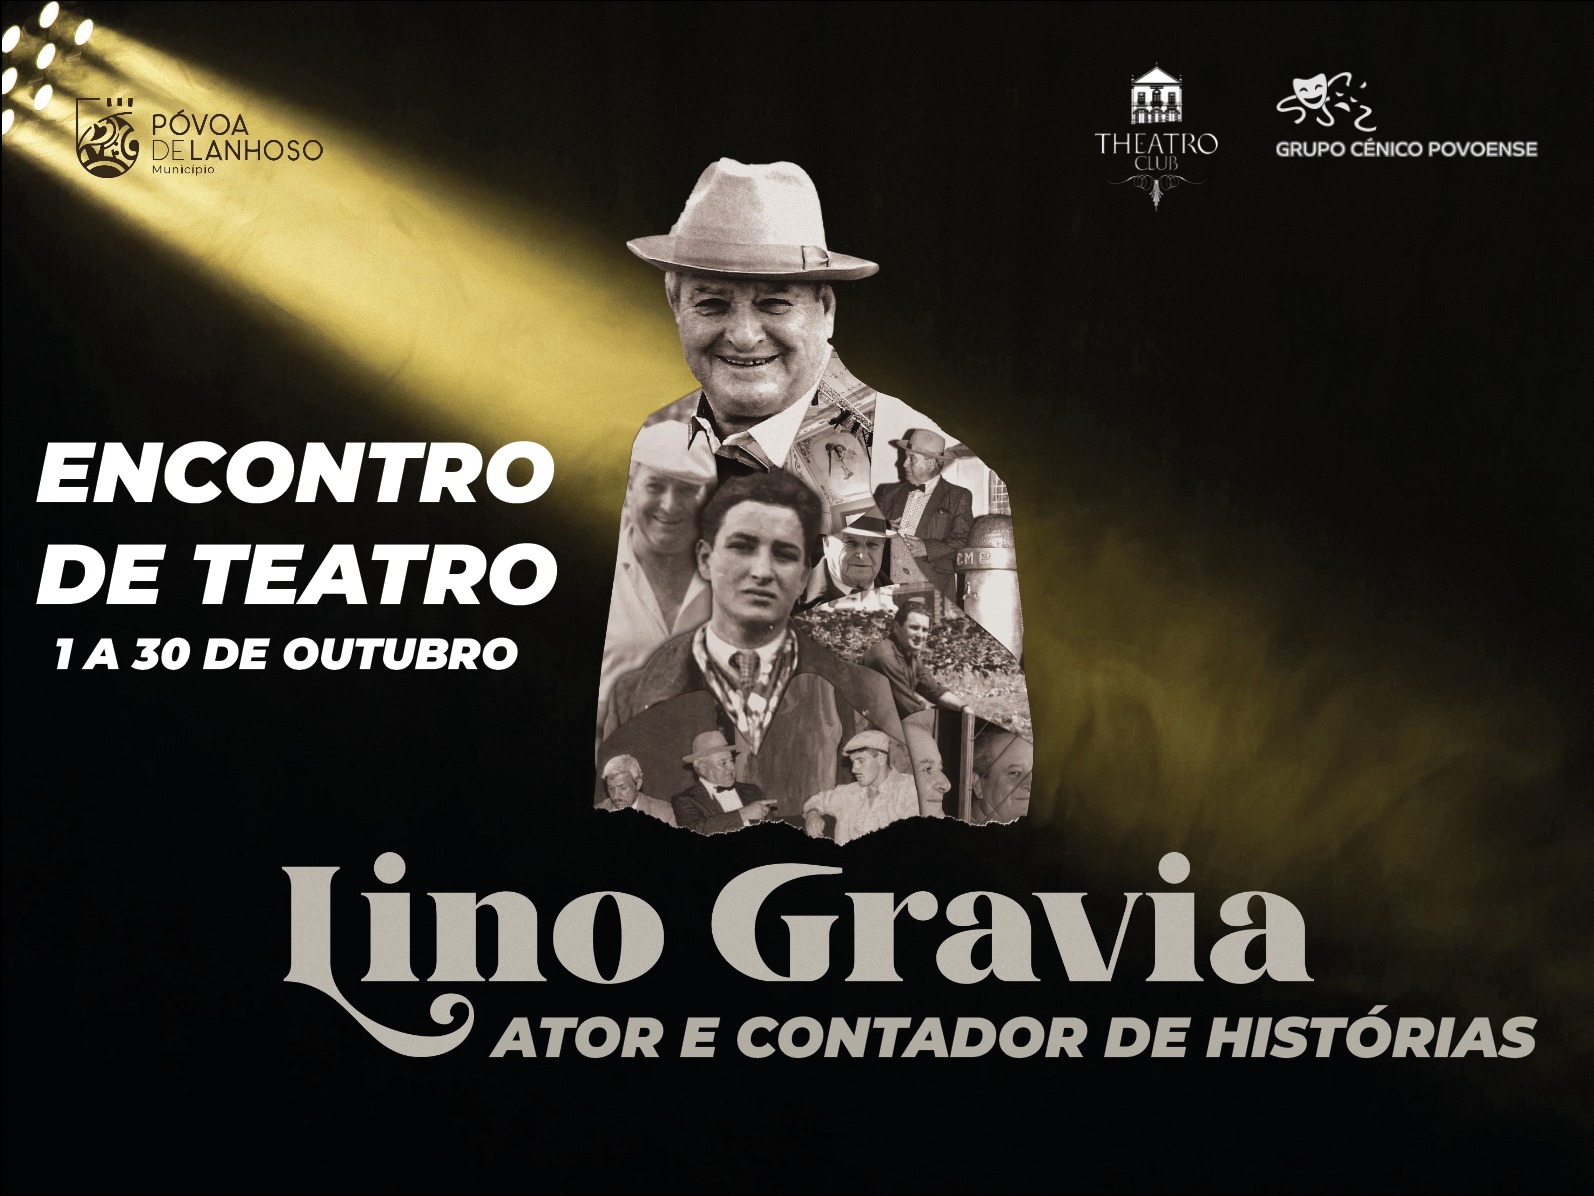 Encontro de Teatro Lino Gravia